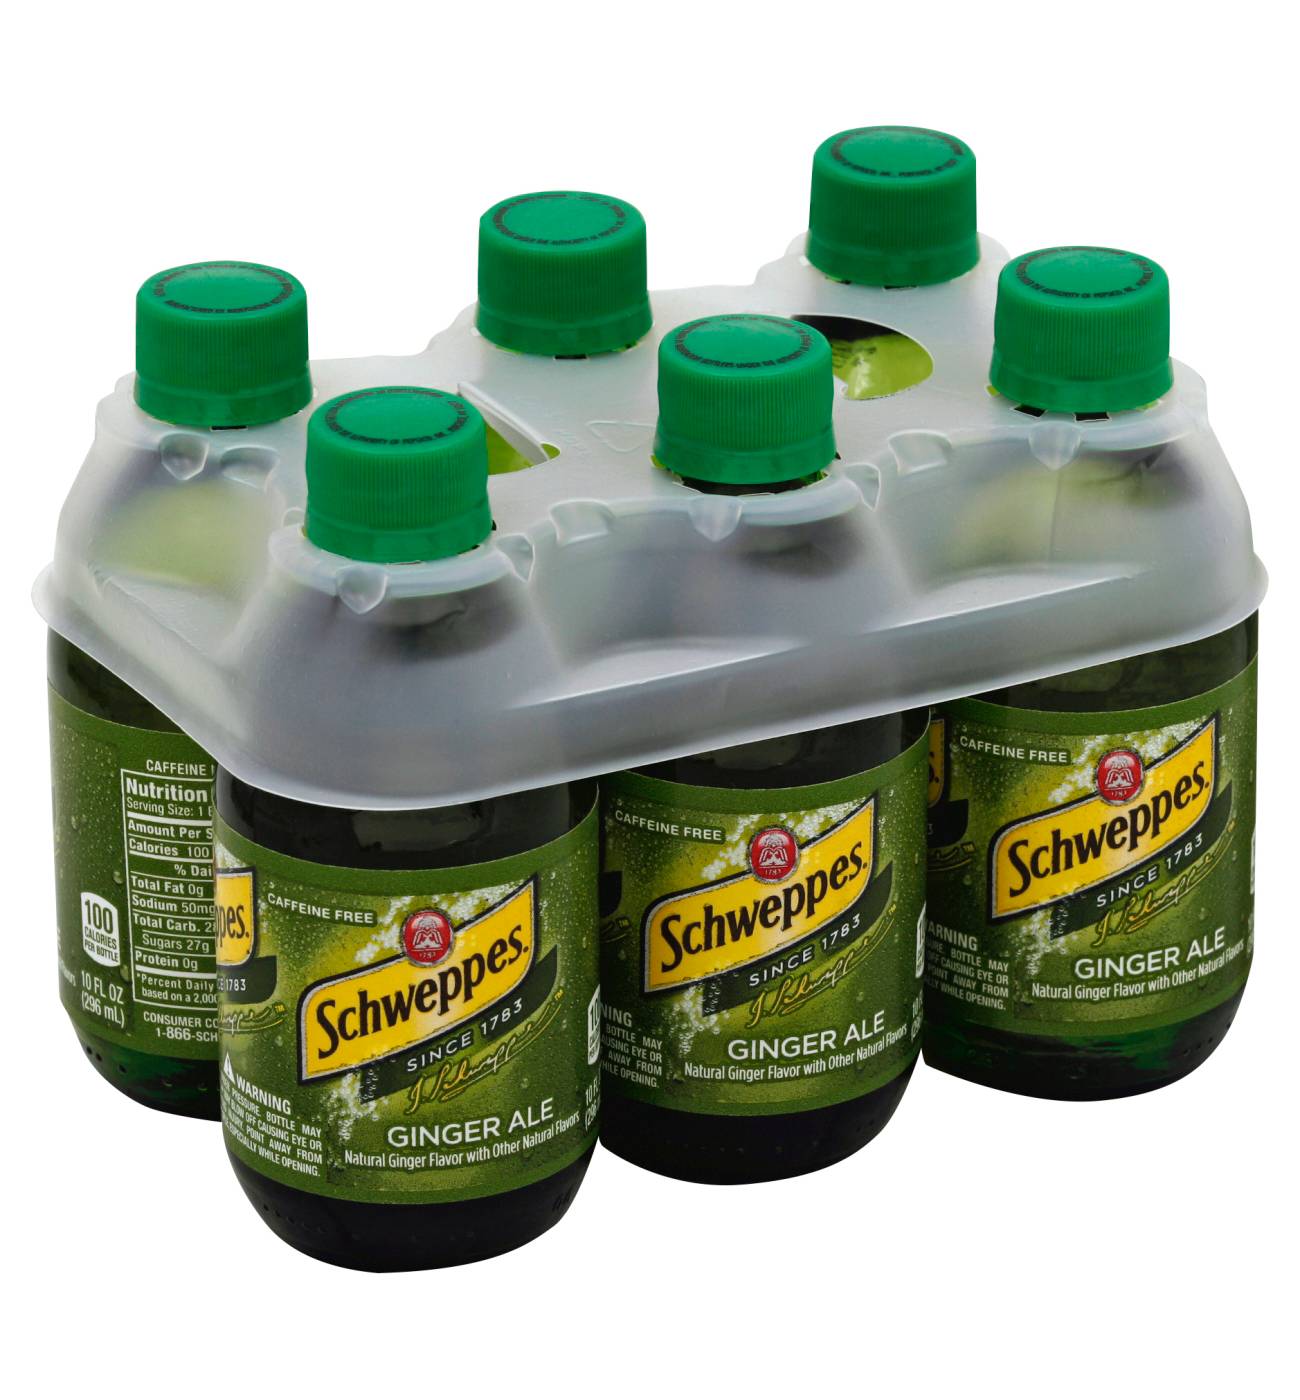 Schweppes Ginger Ale 10 oz Glass Bottles; image 1 of 2